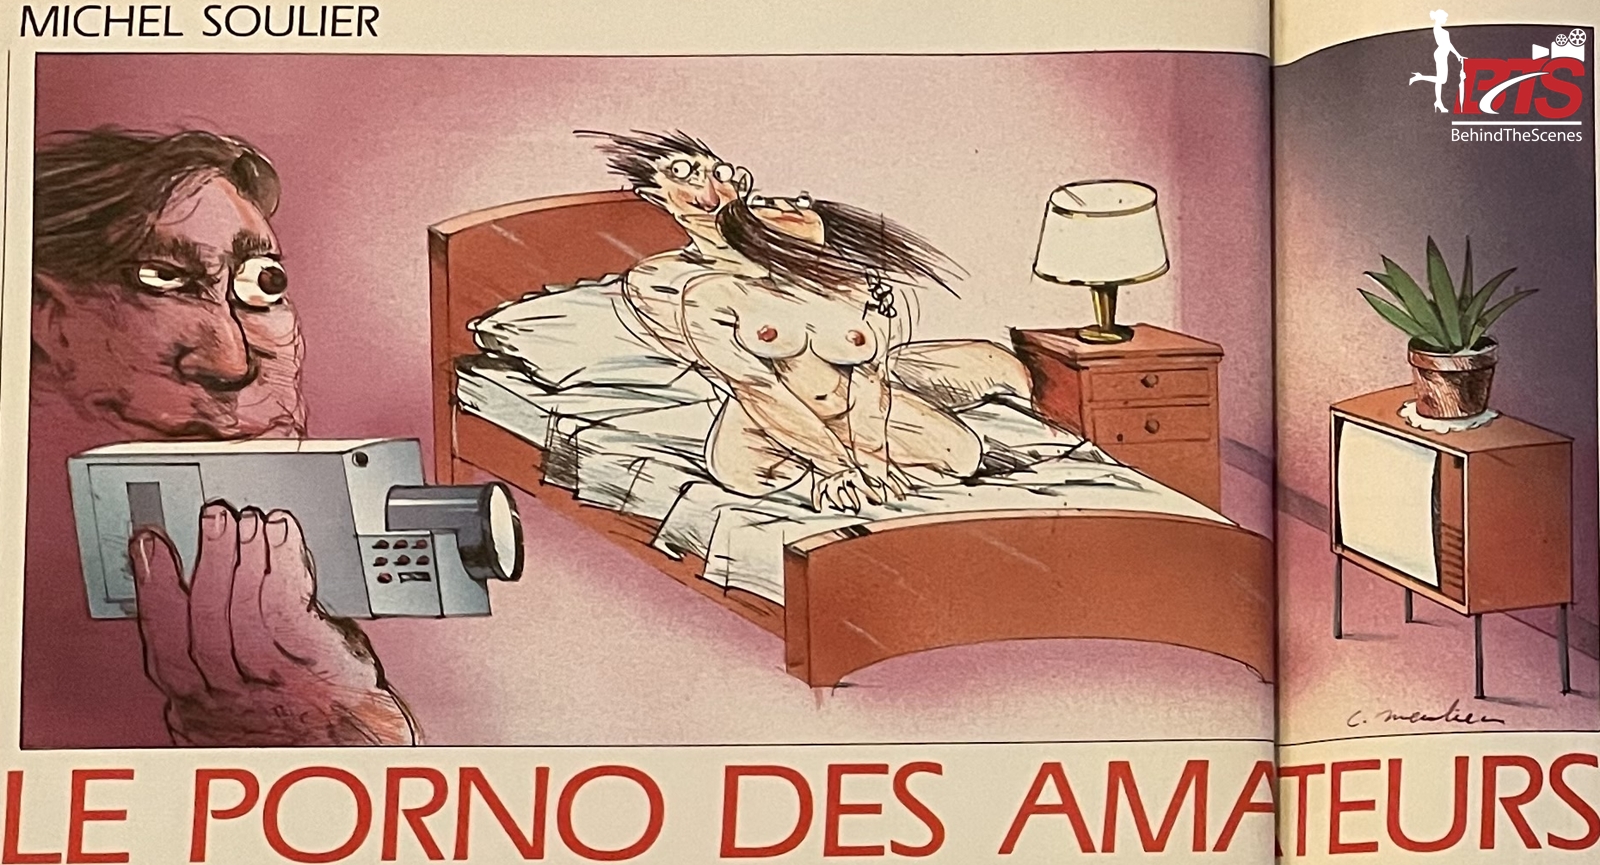 Le Porno des Amateurs/